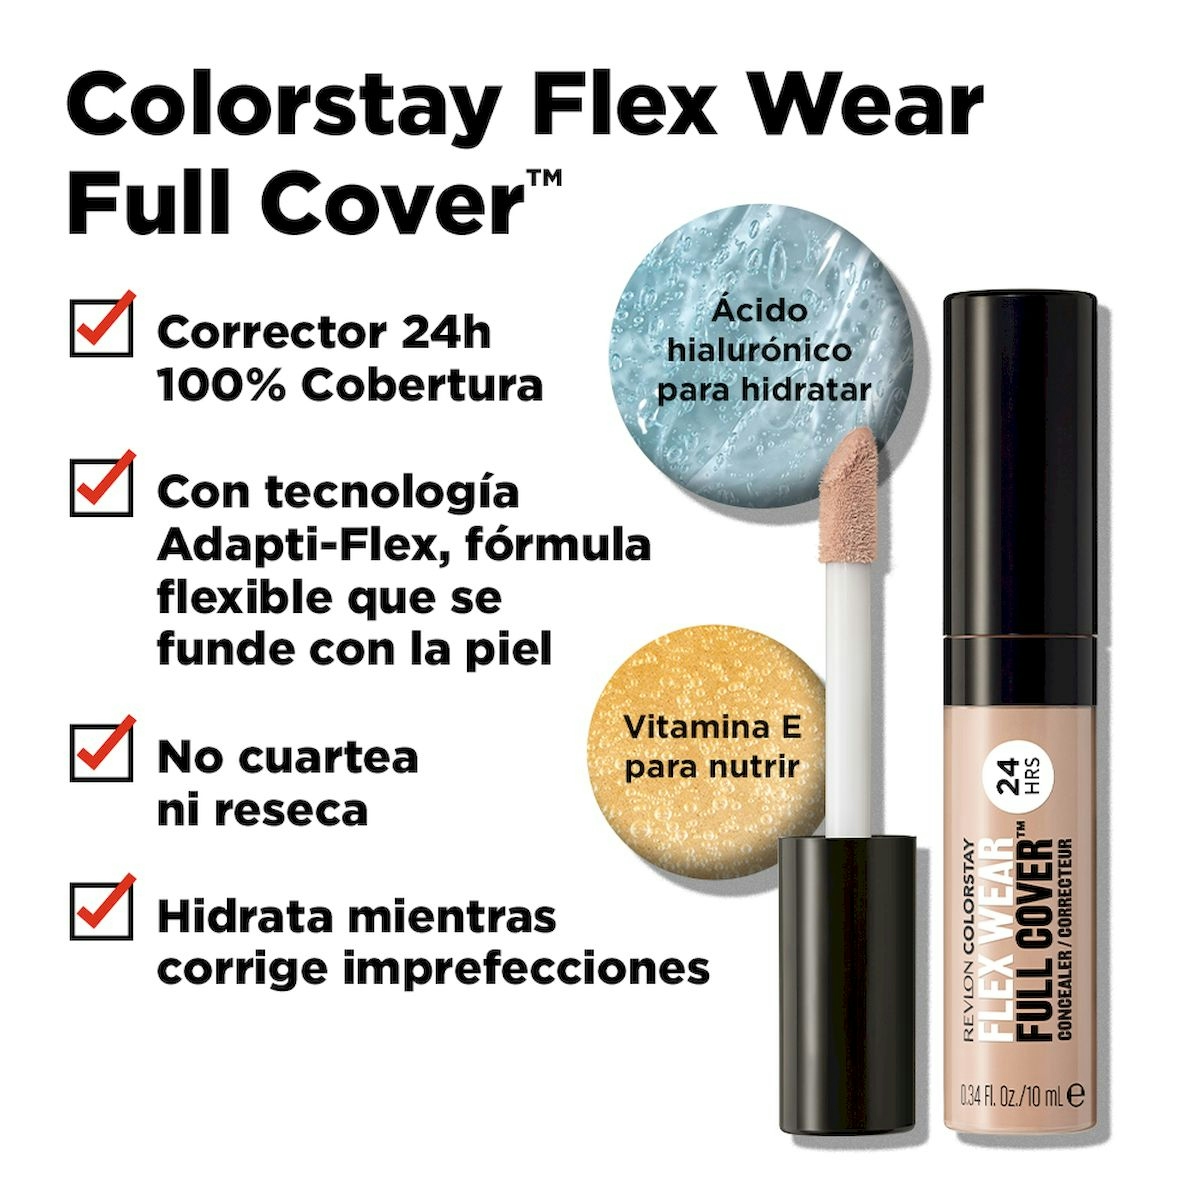 Revlon Colorstay Flex Wear Full Cover Concealer Creme Brul